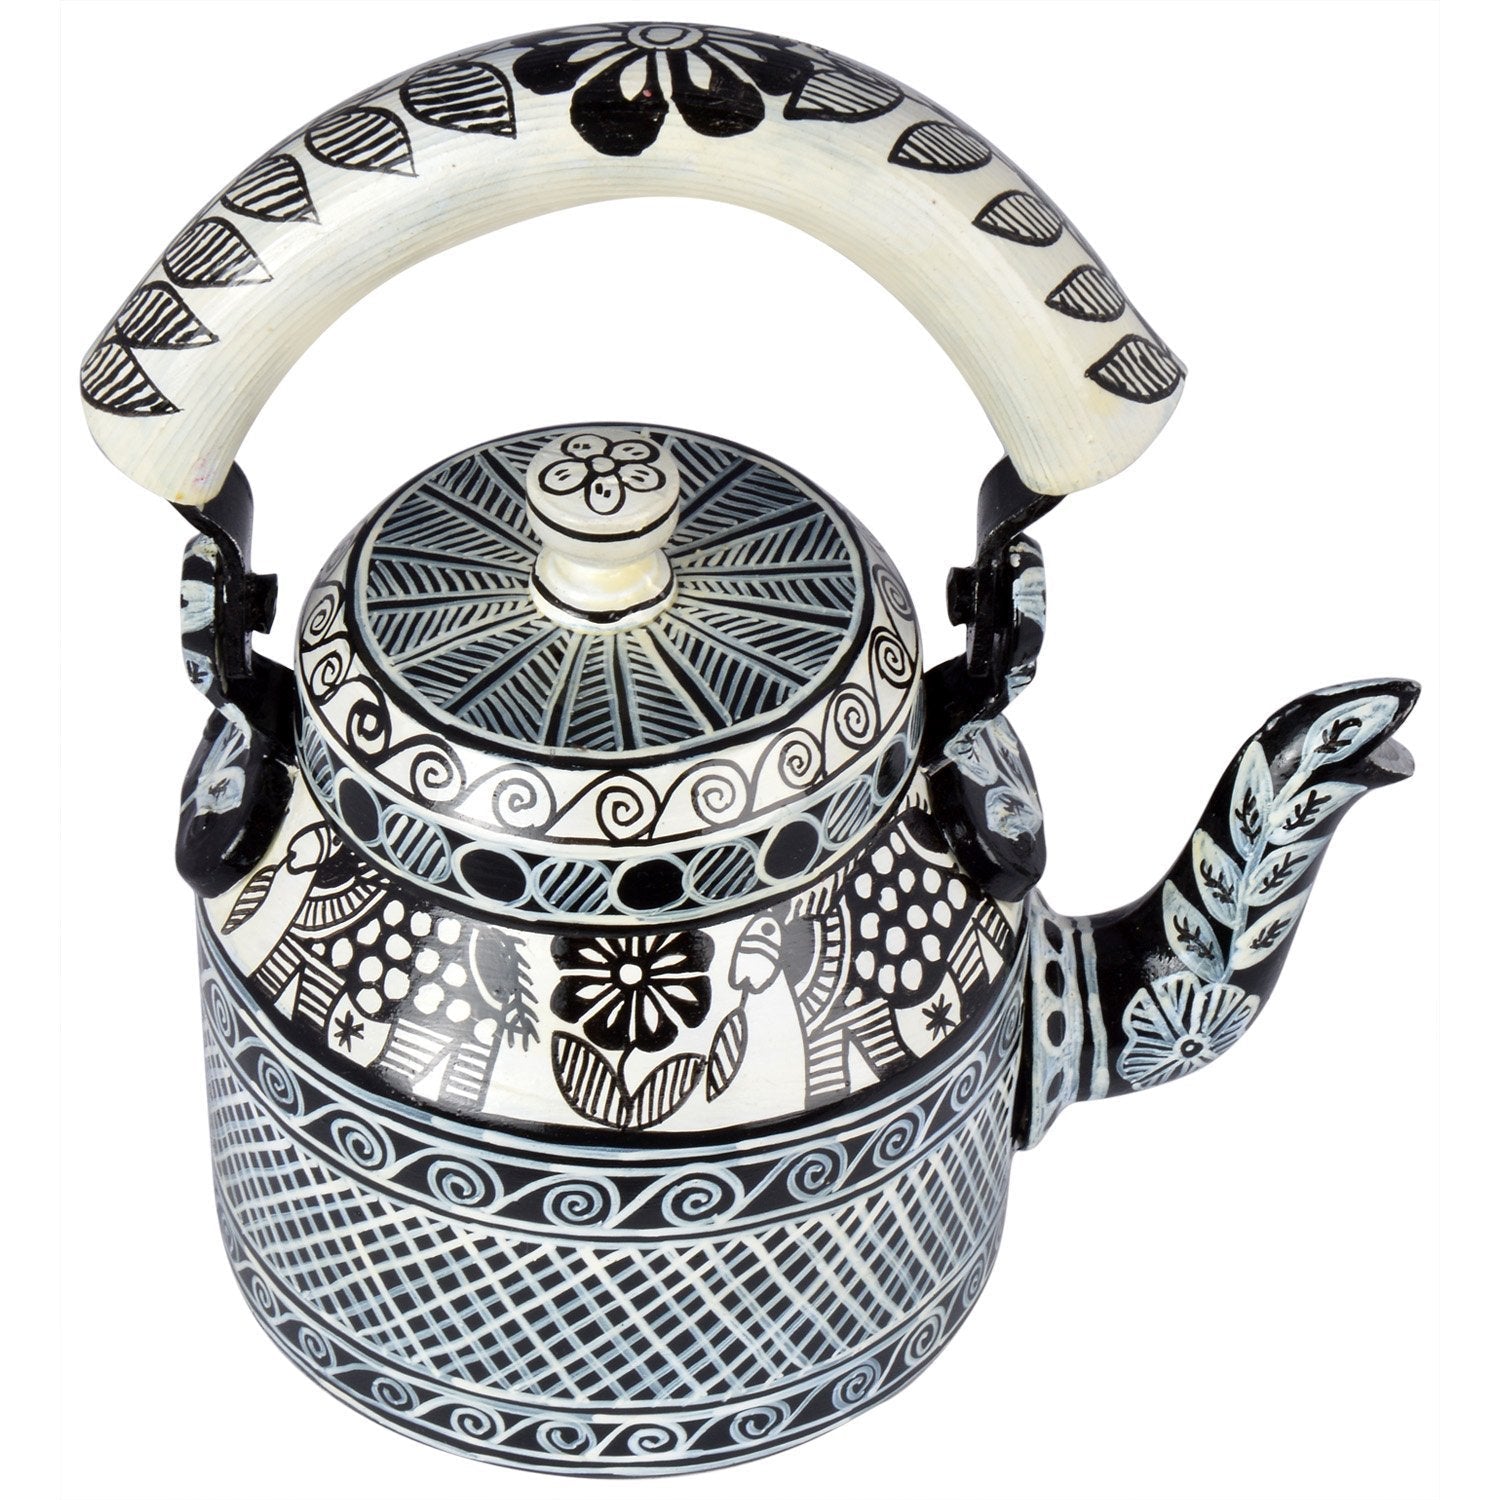 Kaushalam Tea Kettle: Celebration Black & White Madhubani Artwork